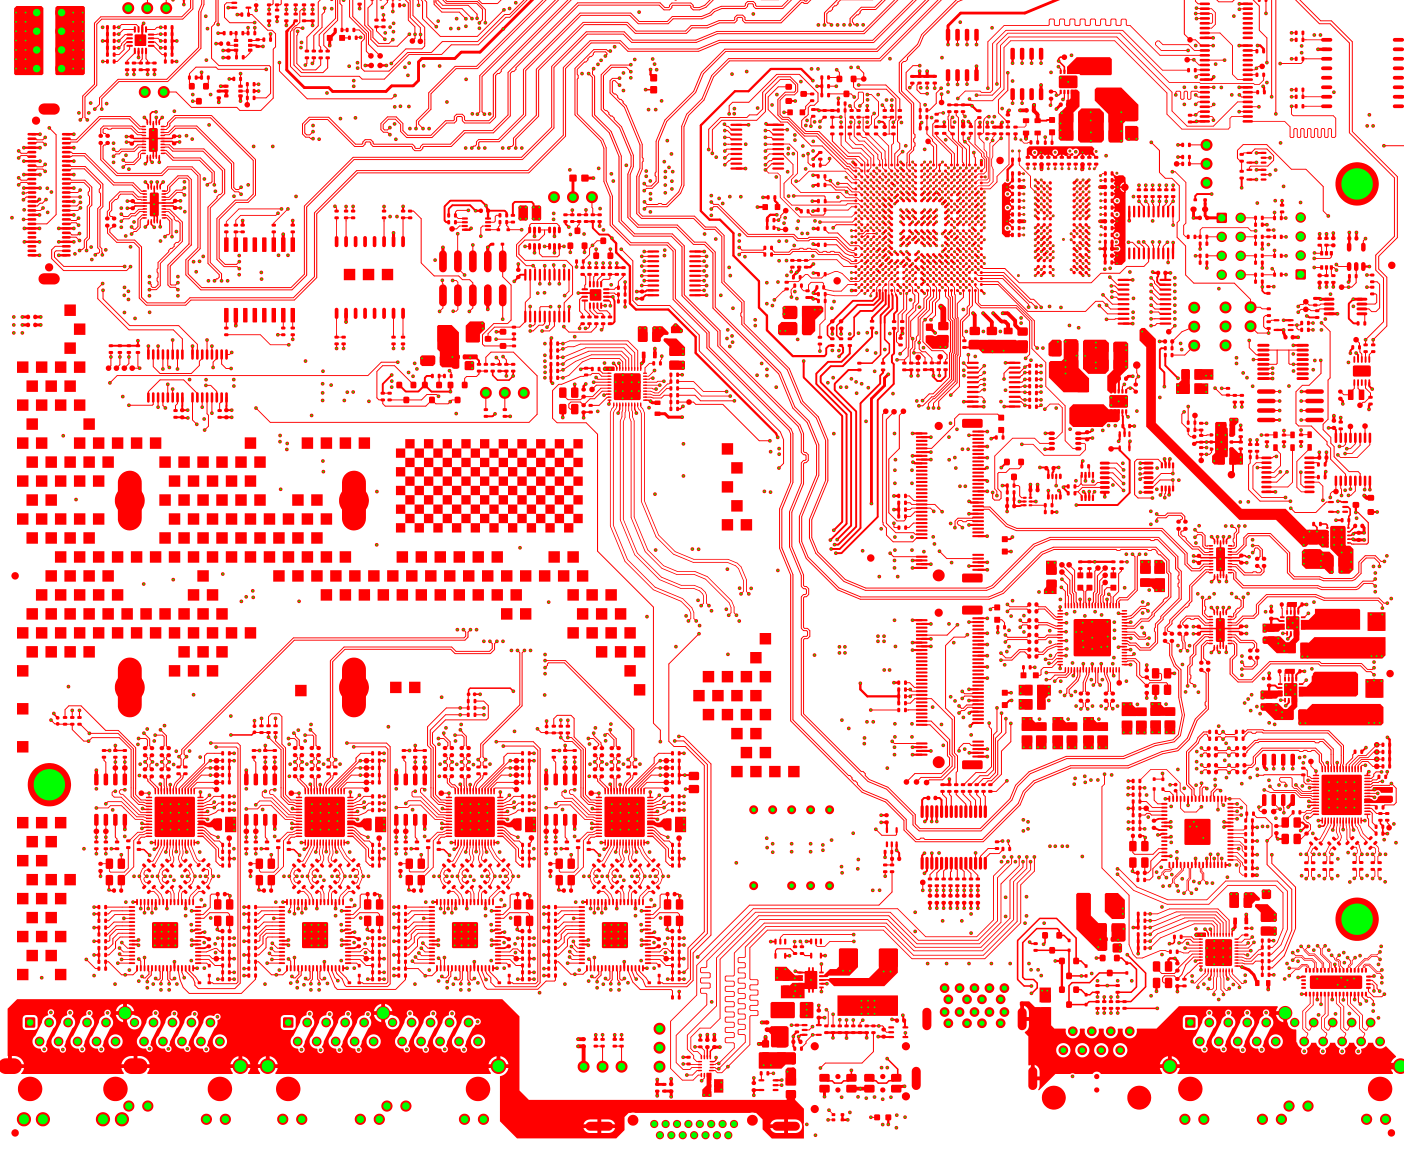 Фрагмент схемы одного из 12 слоев материнской платы современного сервера / ©Wikimedia